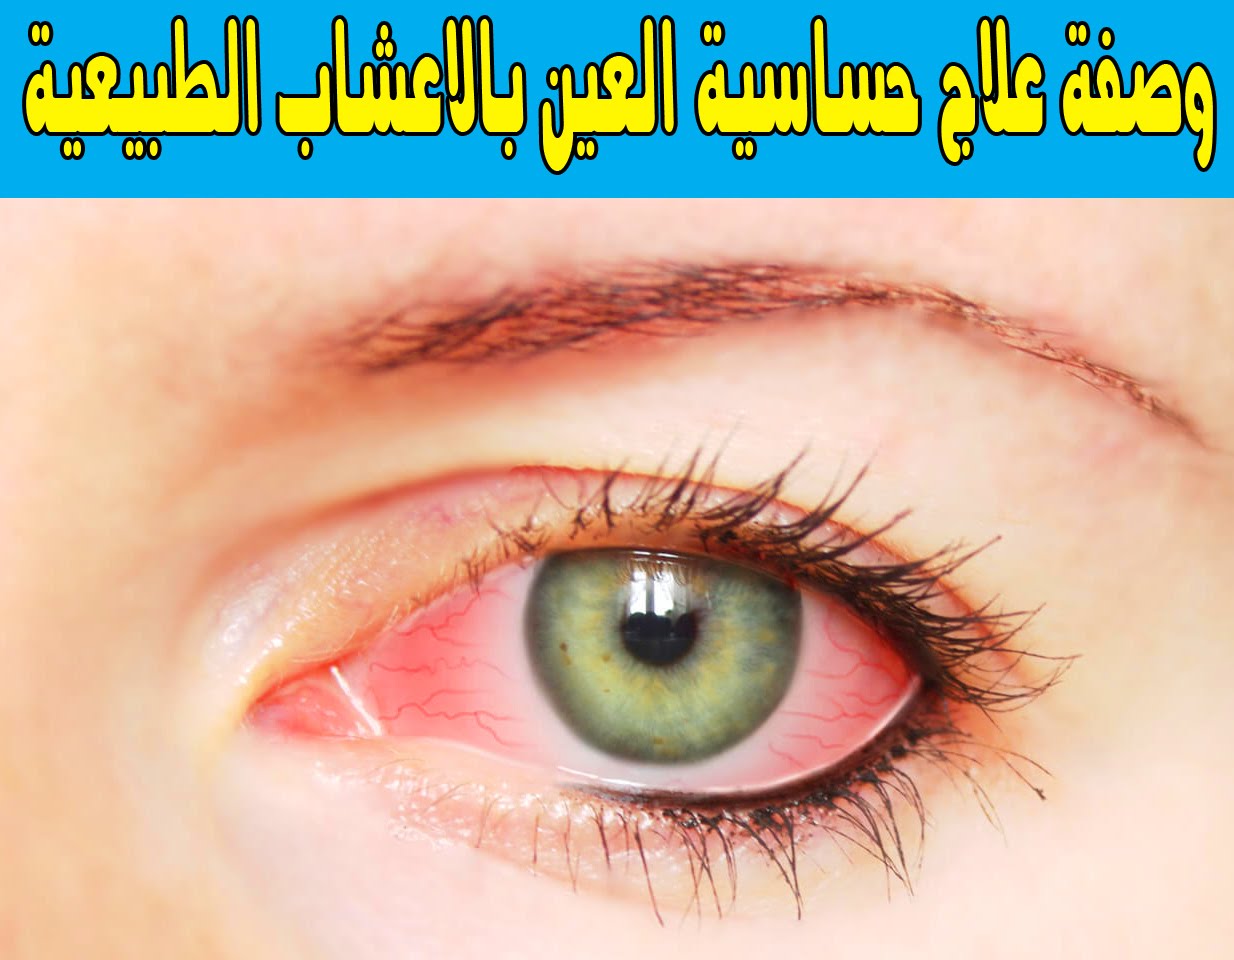 علاج حساسية العين , افضل علاج لحساسيه العين